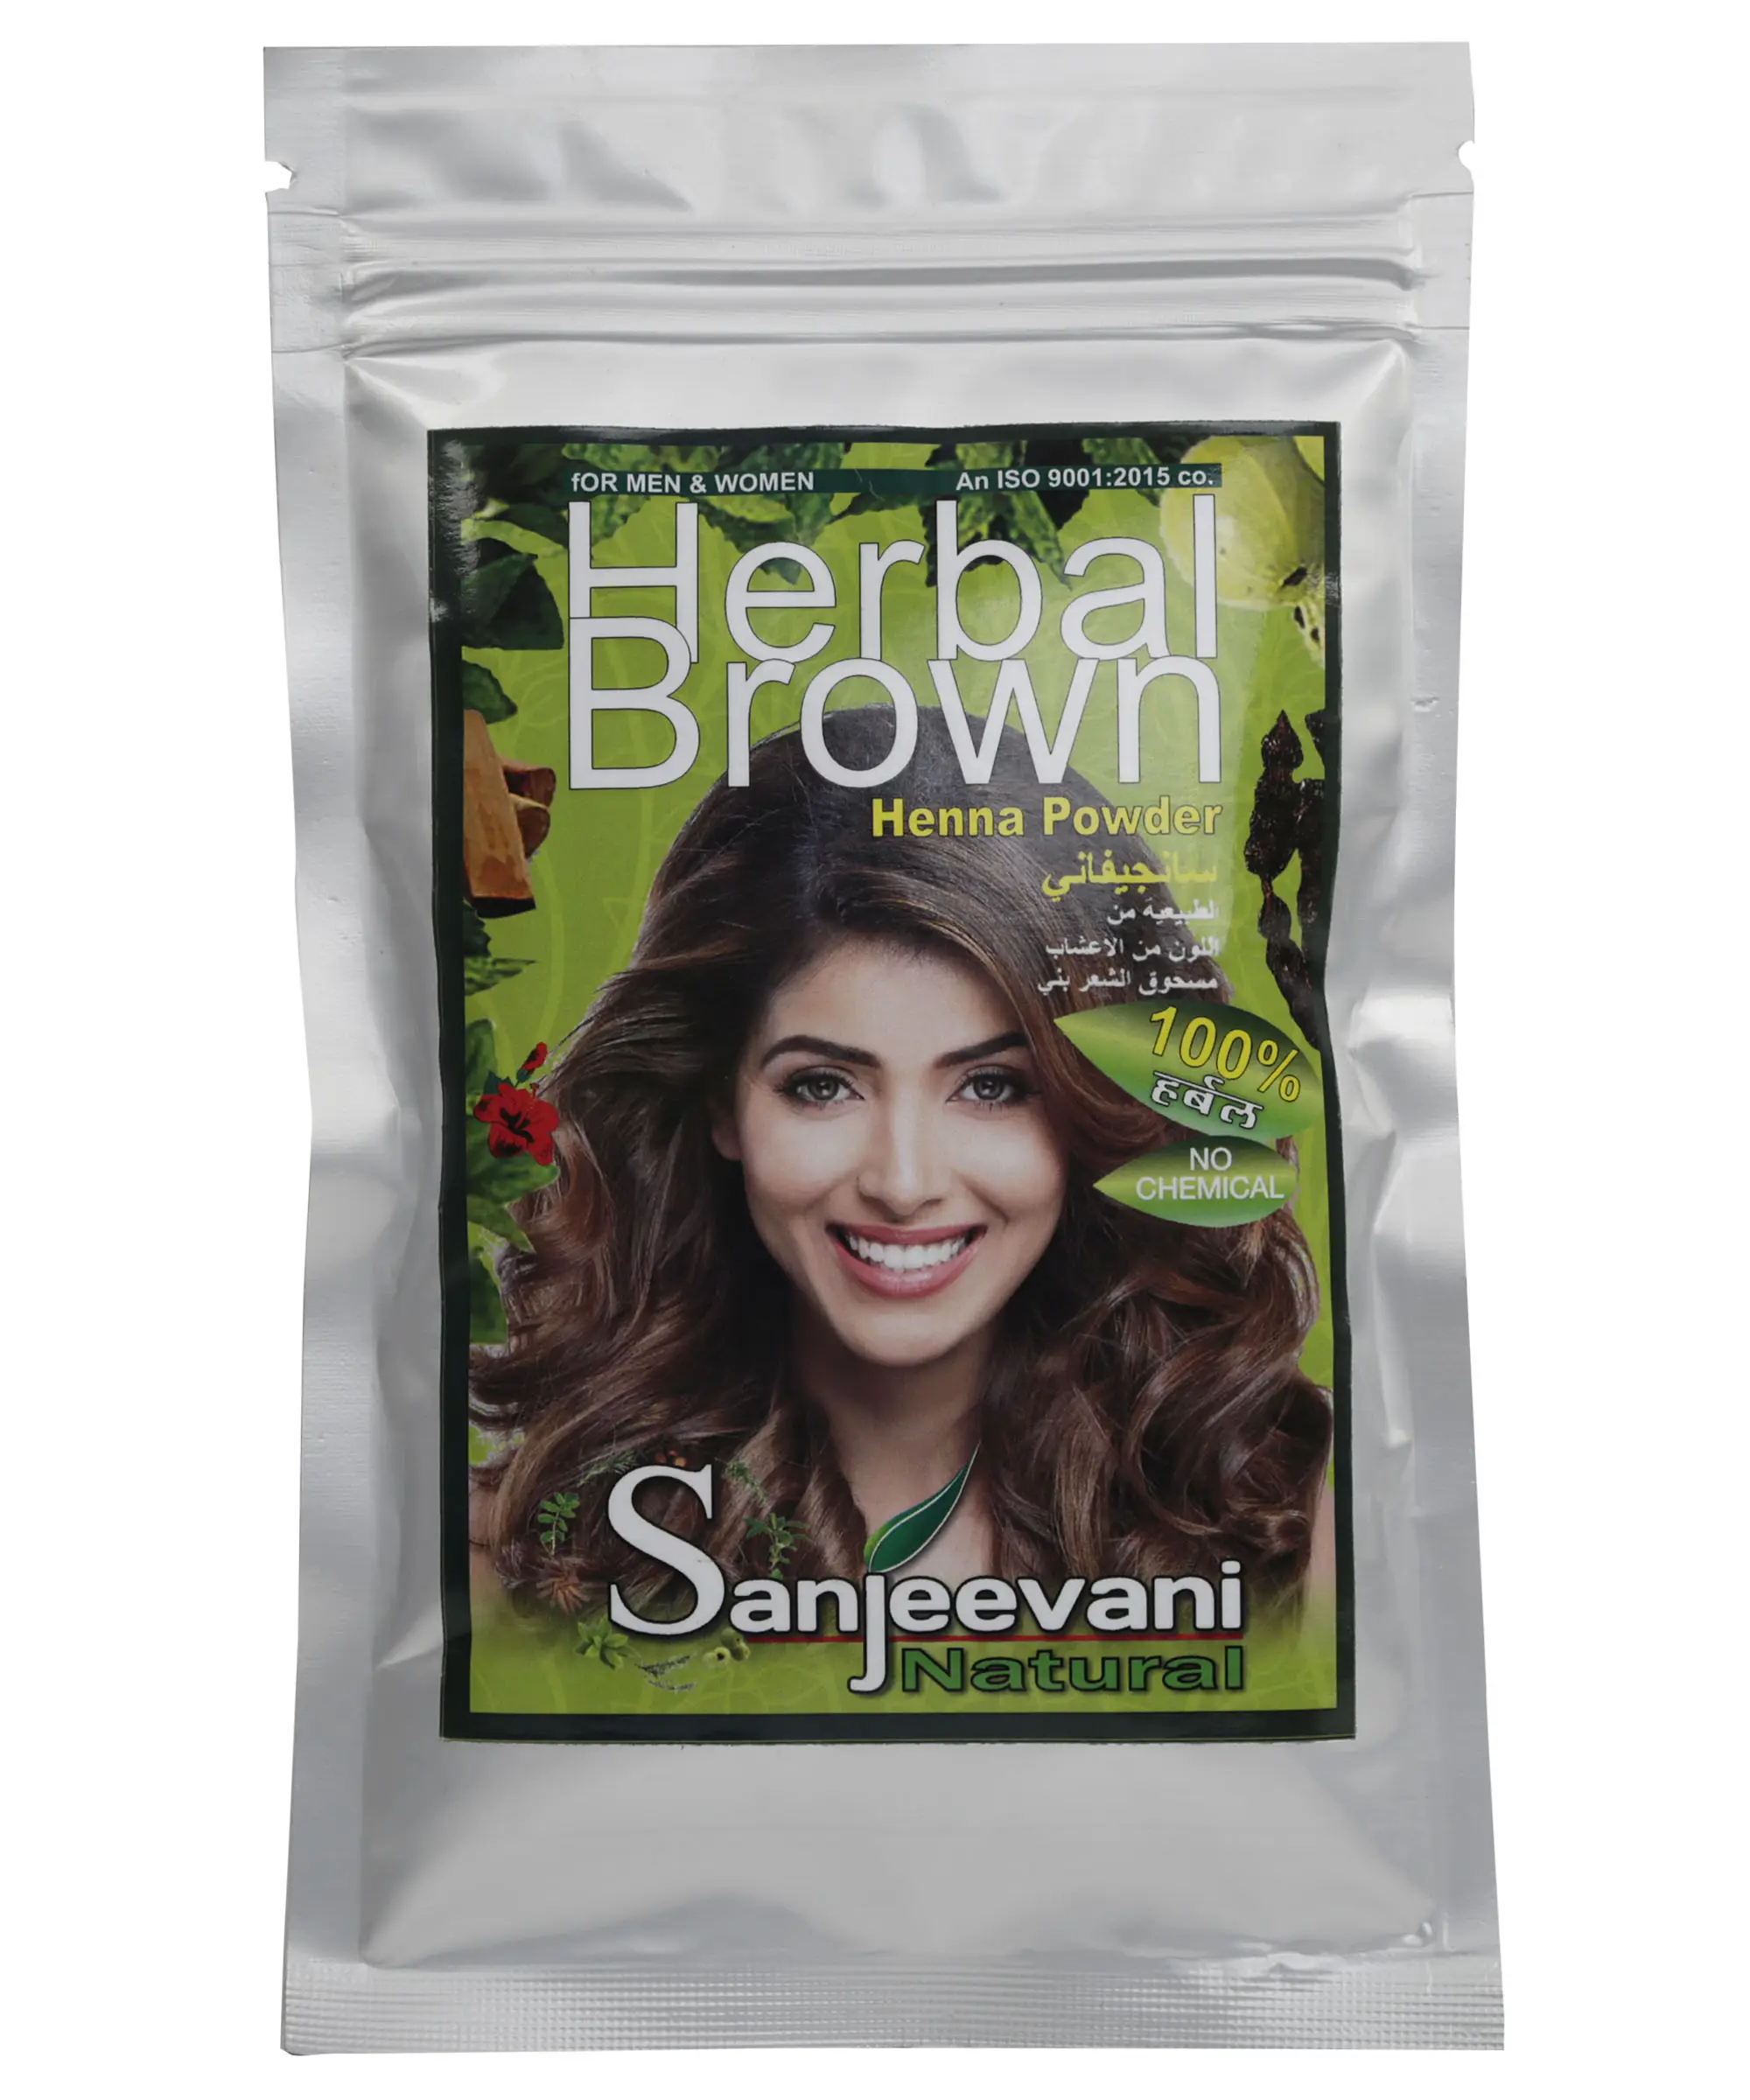 big sale price herbal henna powder hair dye shampoo women sale men quantity brown henna powder dye color